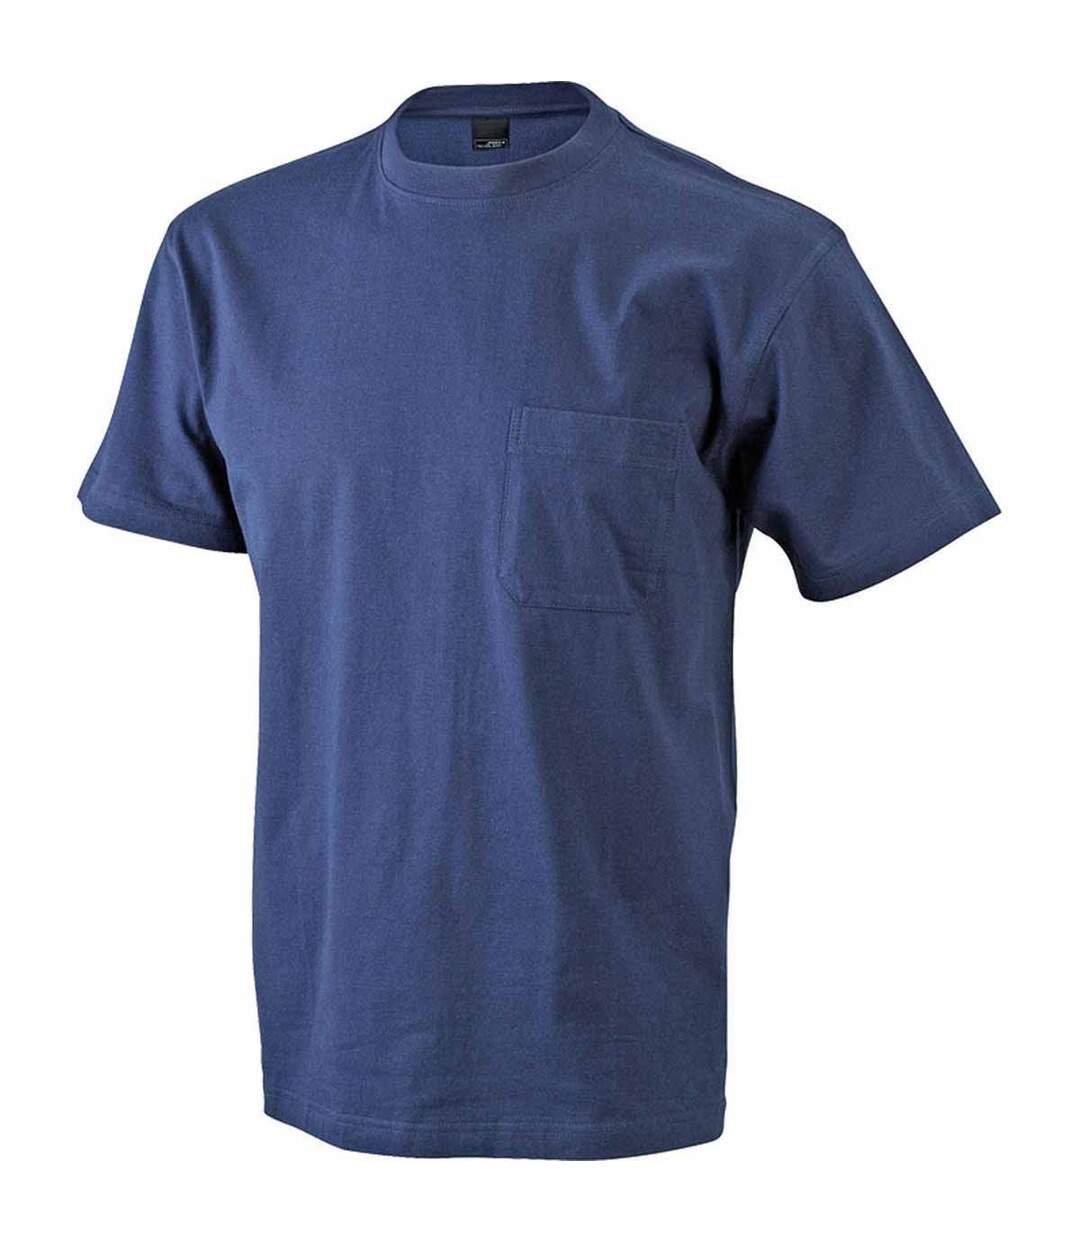 T-shirt homme poche poitrine - JN920 - bleu marine - workwear